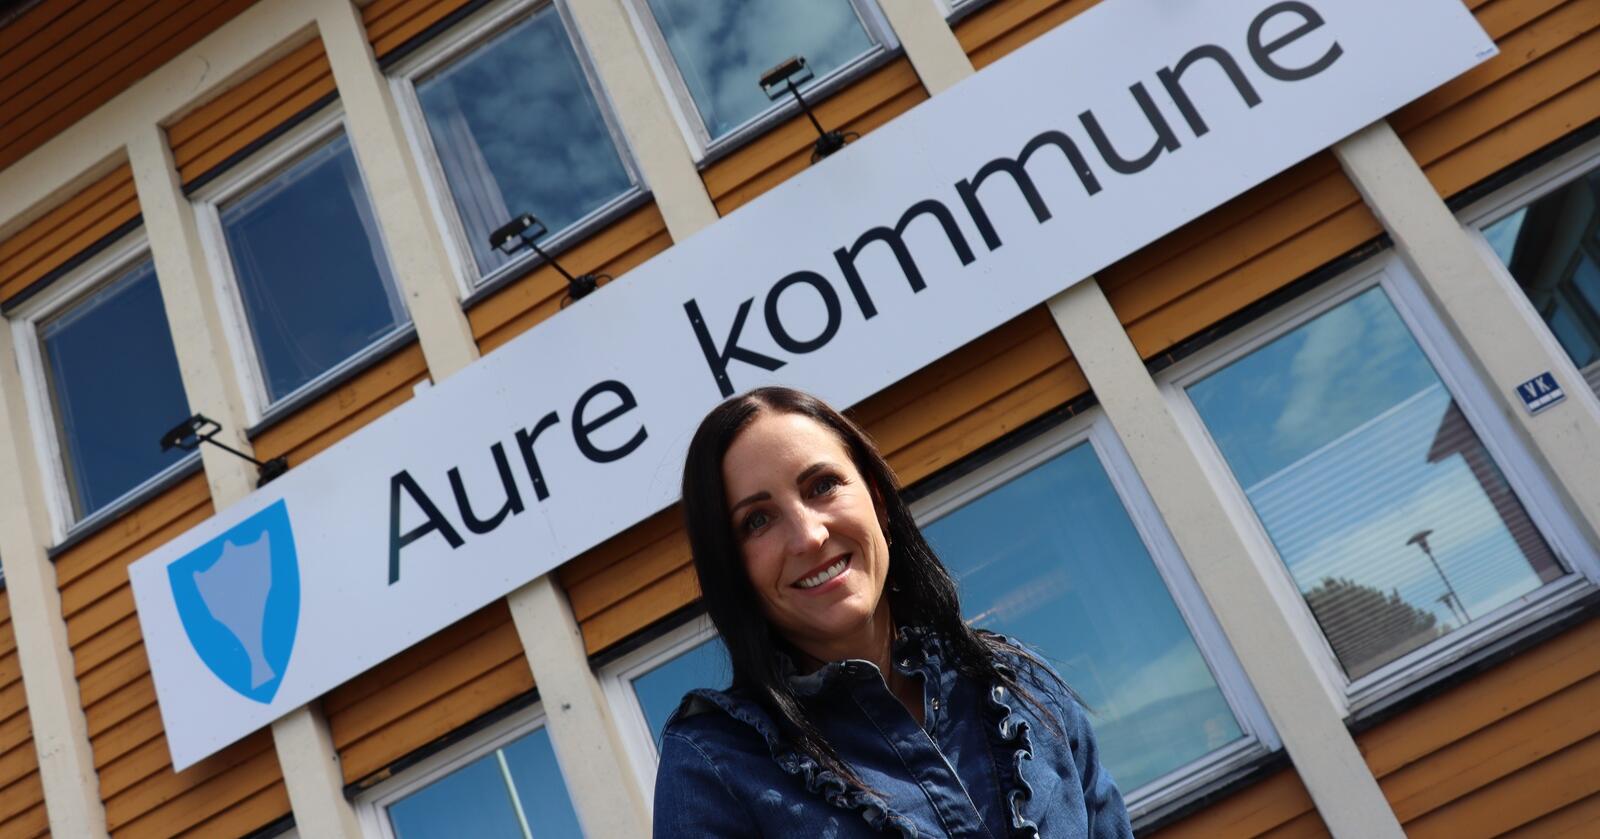 Aure-ordførar Hanne Berit Brekken (Ap) har fått beskjed frå innbyggjarane om at dei vil bli i Møre og Romsdal. Foto: Janne Grete Aspen